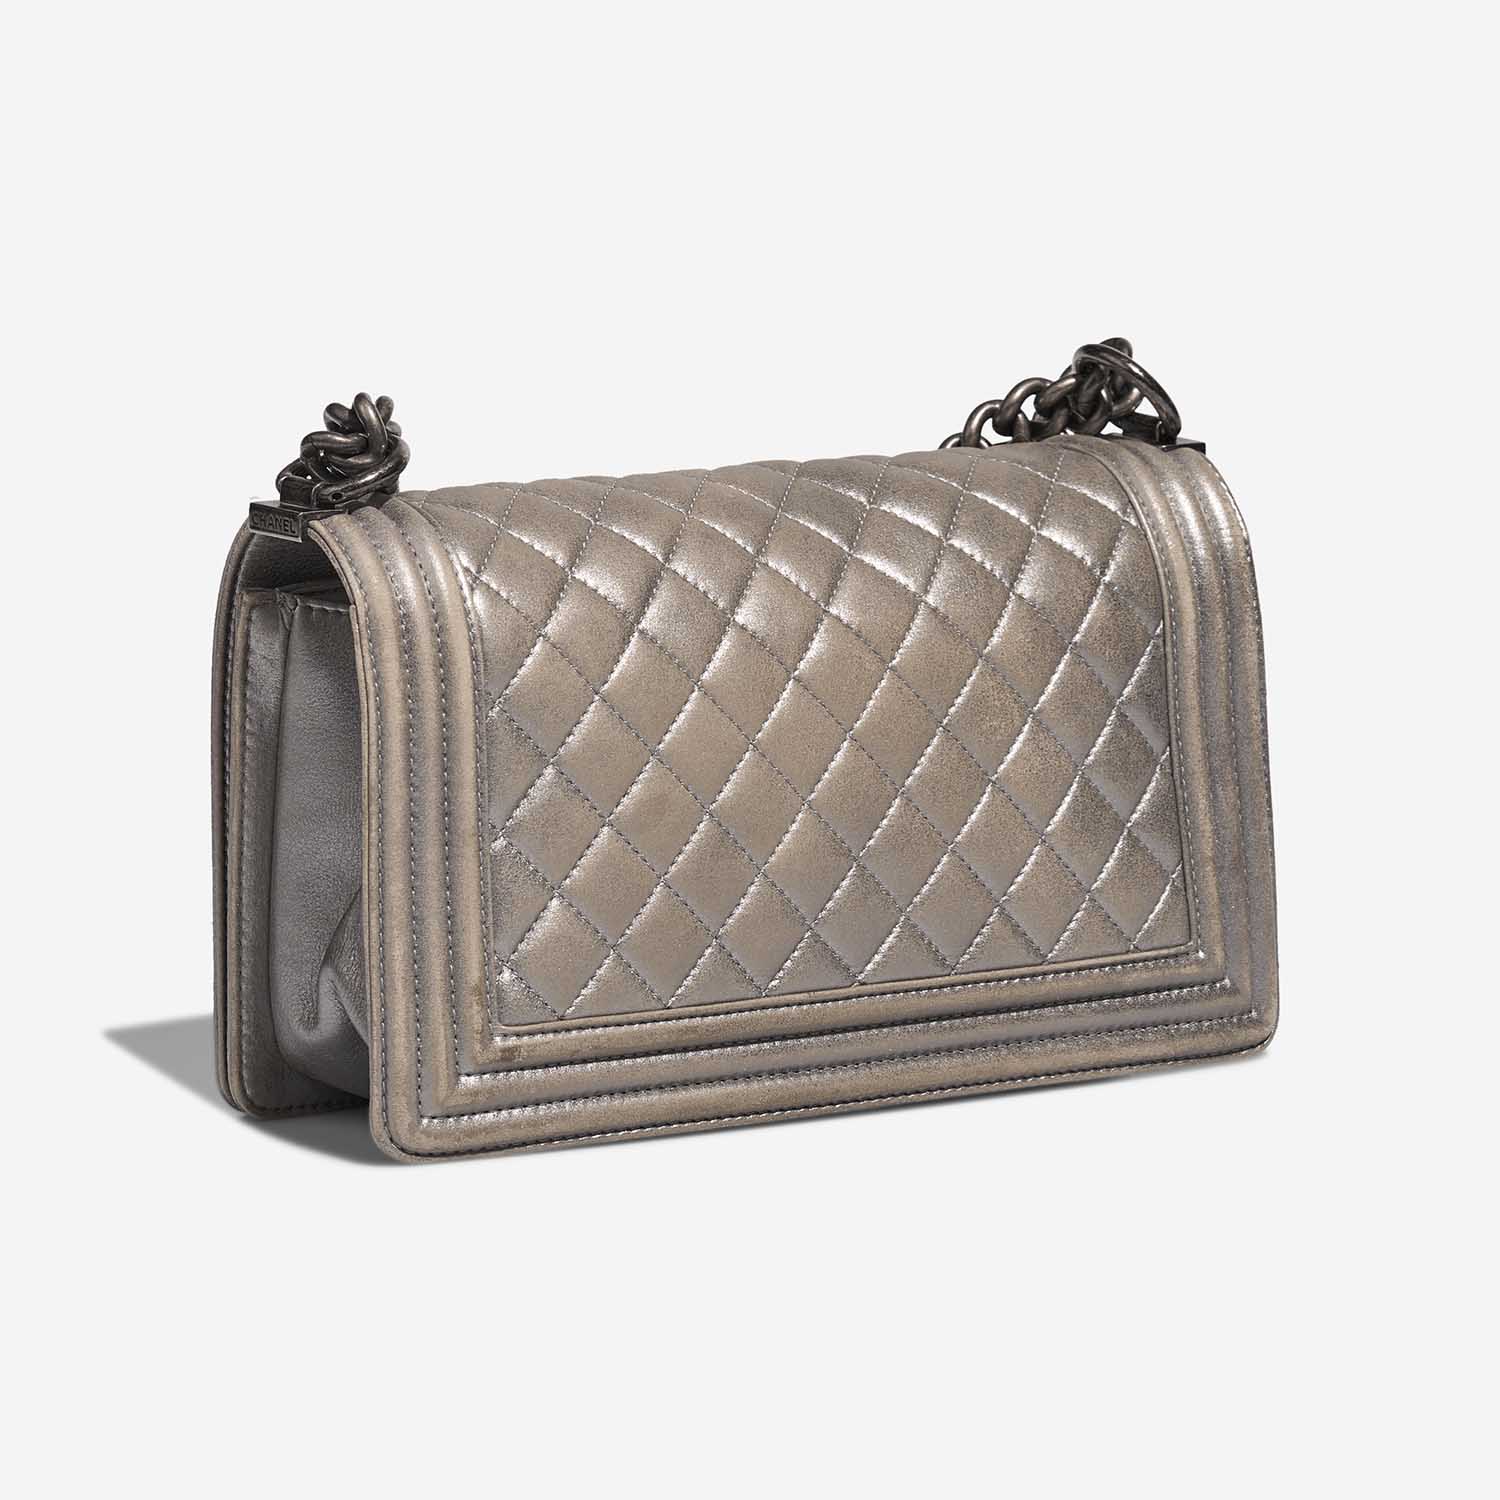 Chanel Boy NewMedium Silver Side Back | Verkaufen Sie Ihre Designer-Tasche auf Saclab.com